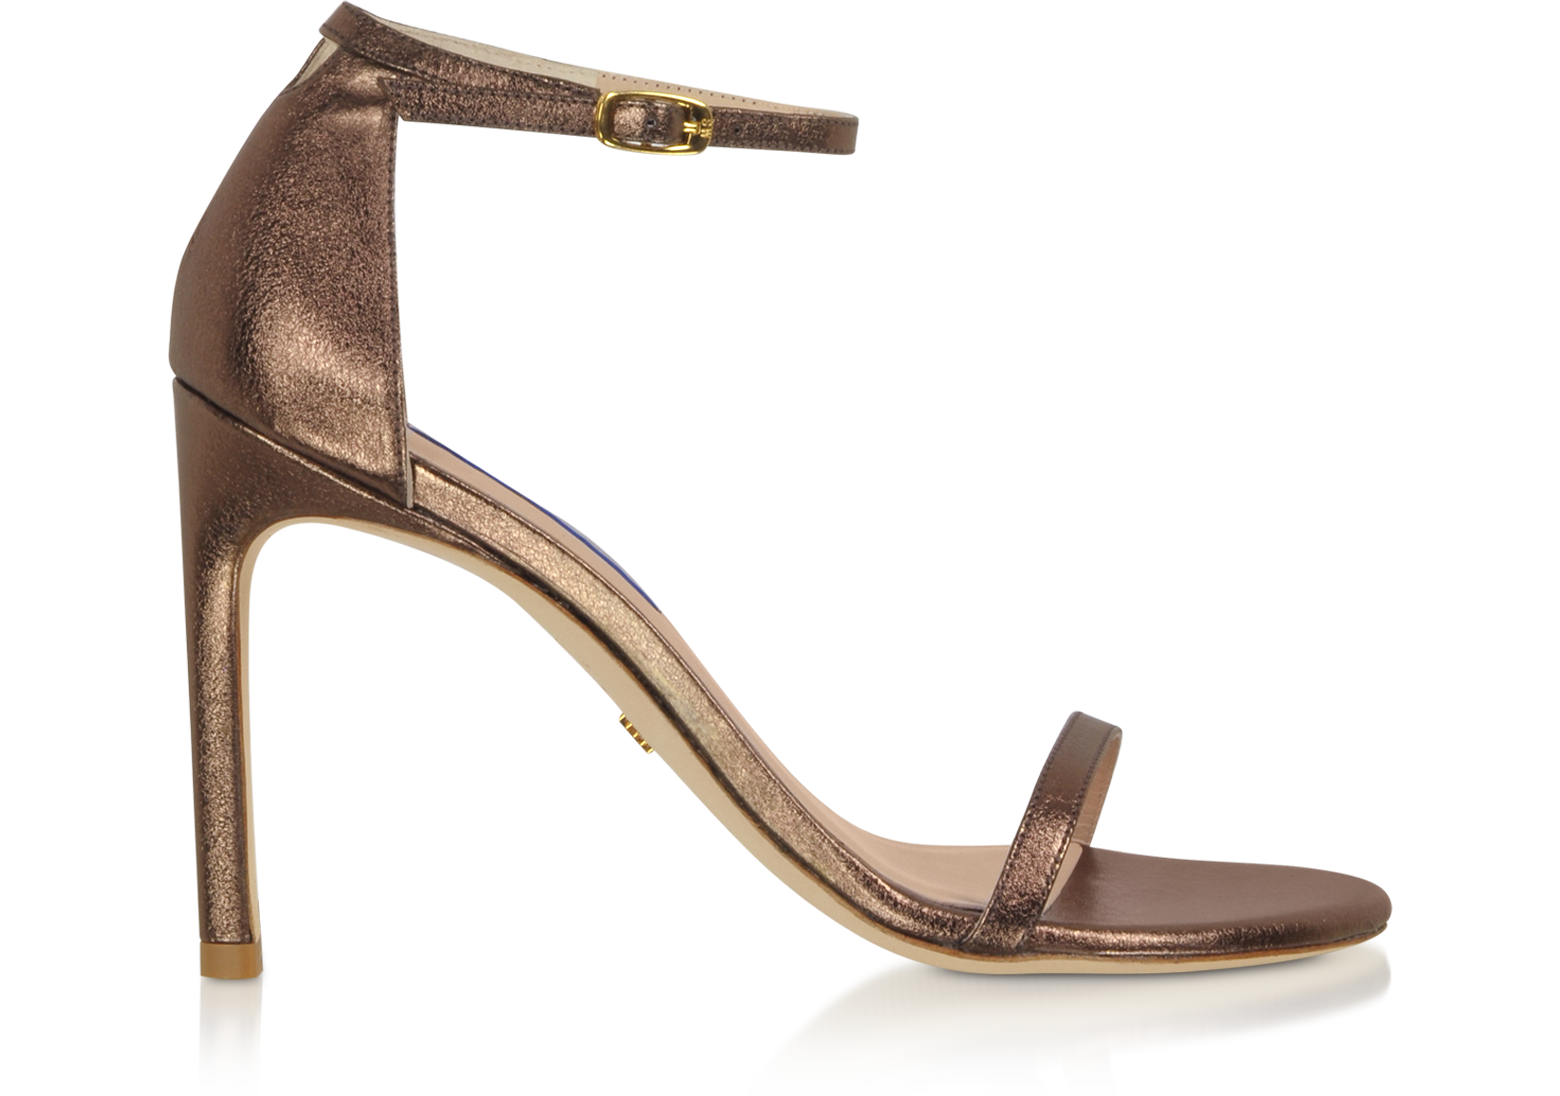 bronze high heels